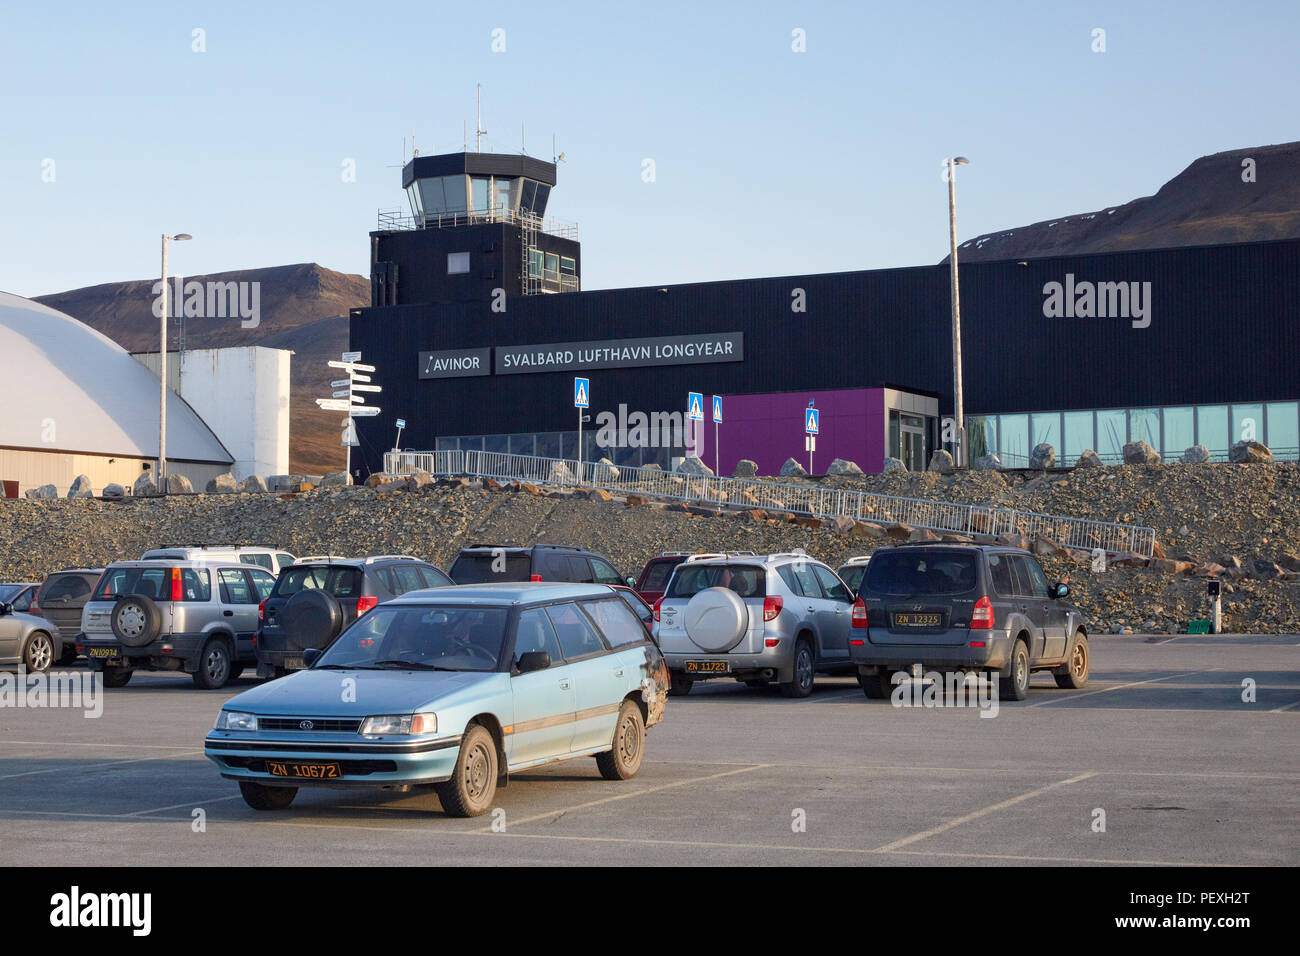 L'aéroport de Longyearbyen Svalbard Svalbard Lufthavn, Longyer avec parking en face de c Banque D'Images